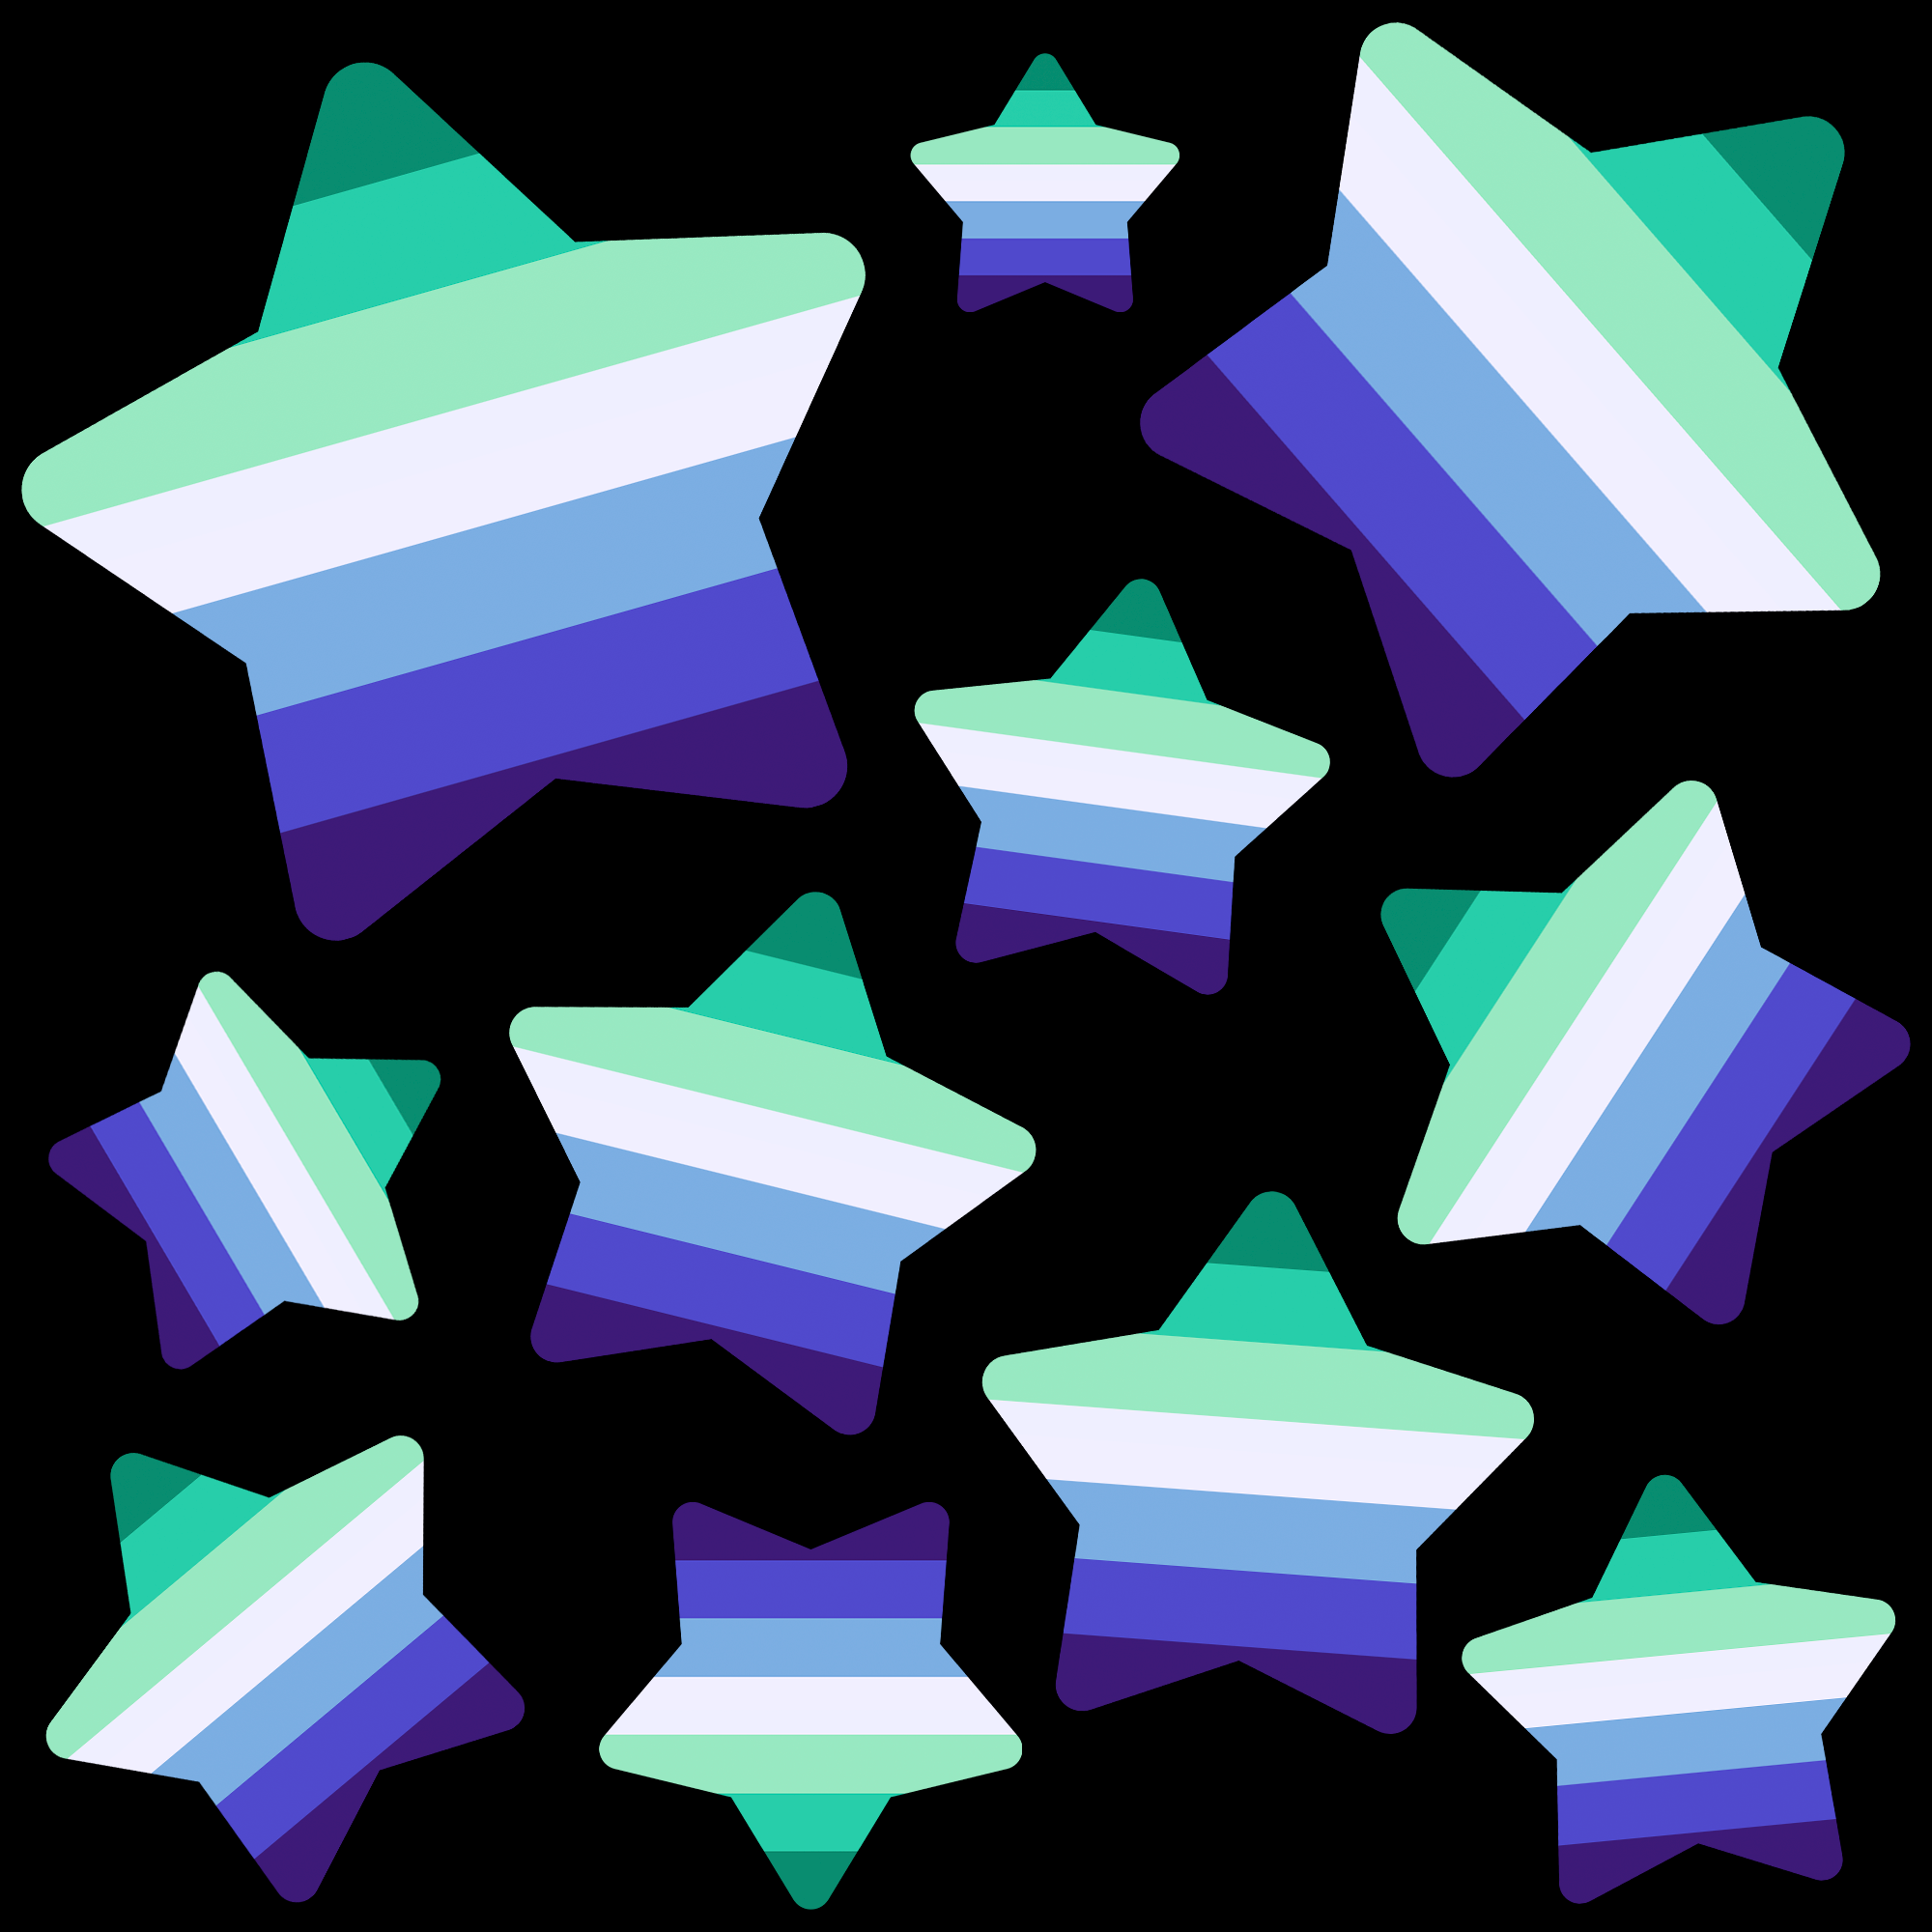 Várias estrelas de cinco pontas em ângulos em tamanhos diferentes na frente de um fundo preto. As estrelas possuem faixas nas seguintes sete cores: turquesa, esmeralda, verde água, branca, azul pálida, azul real e índigo.